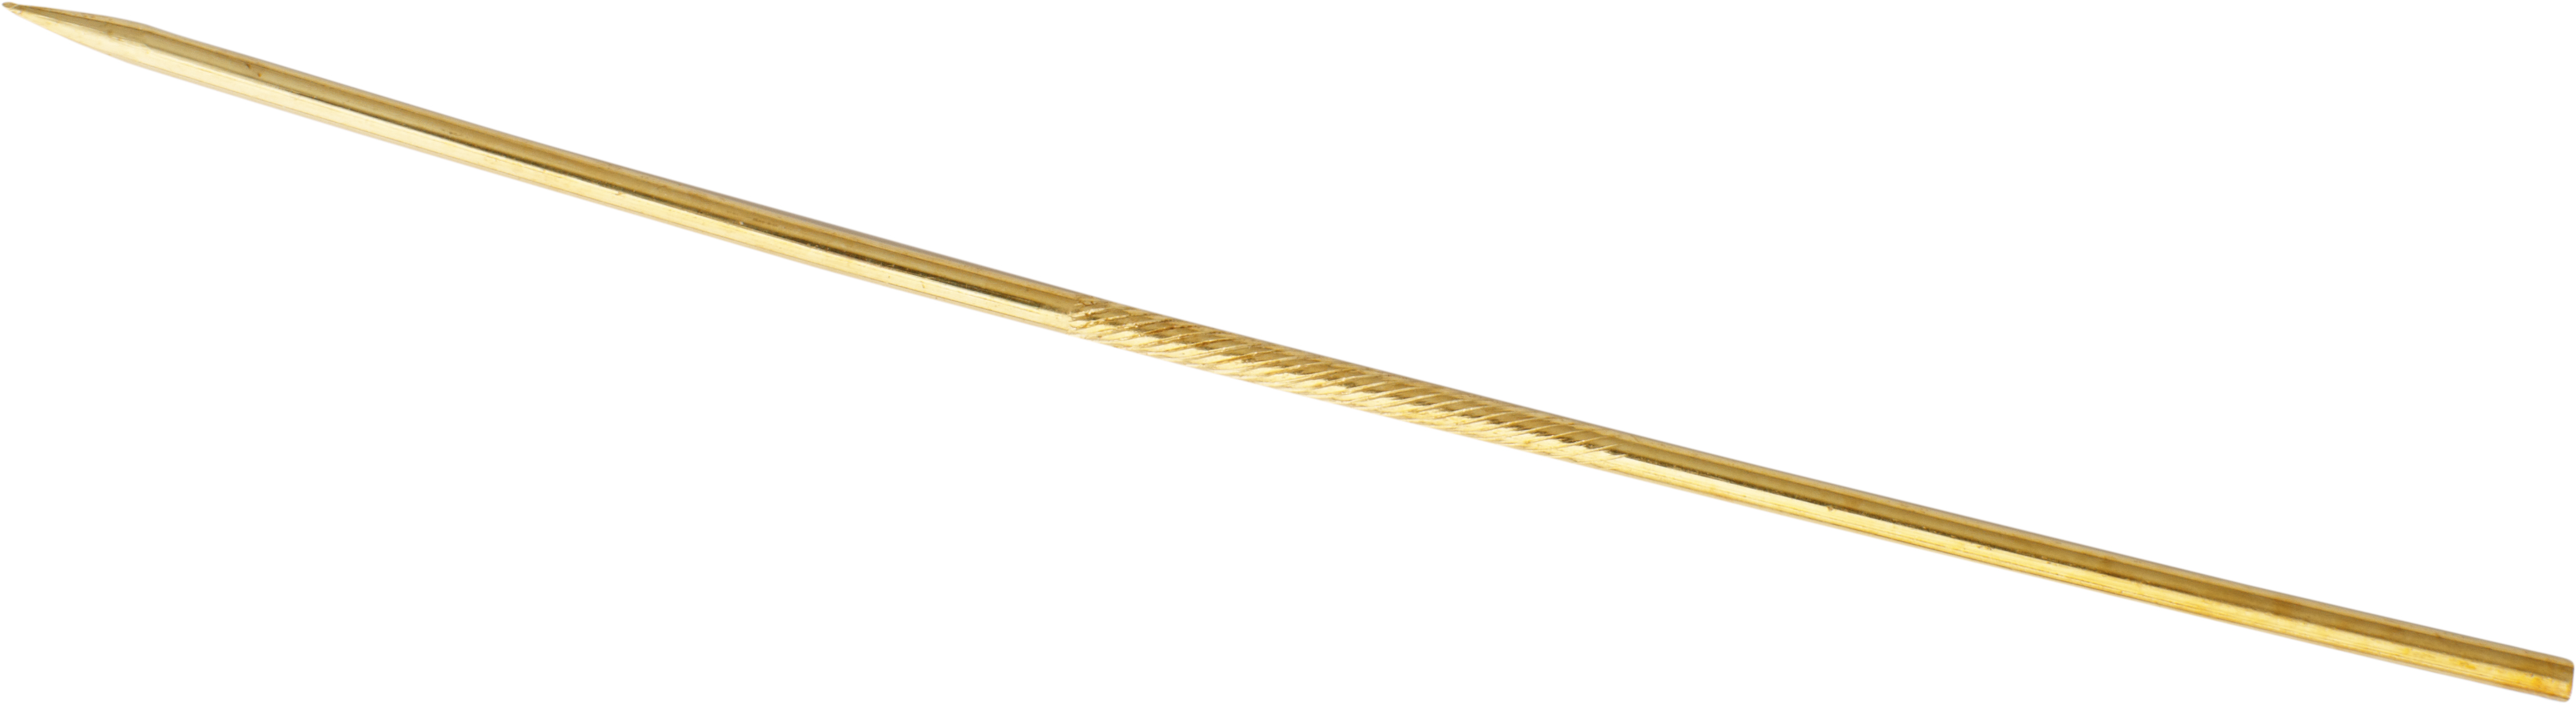 Szpilka do krawata złoto 750/-żółte złoto długość 60,00mm, prosta